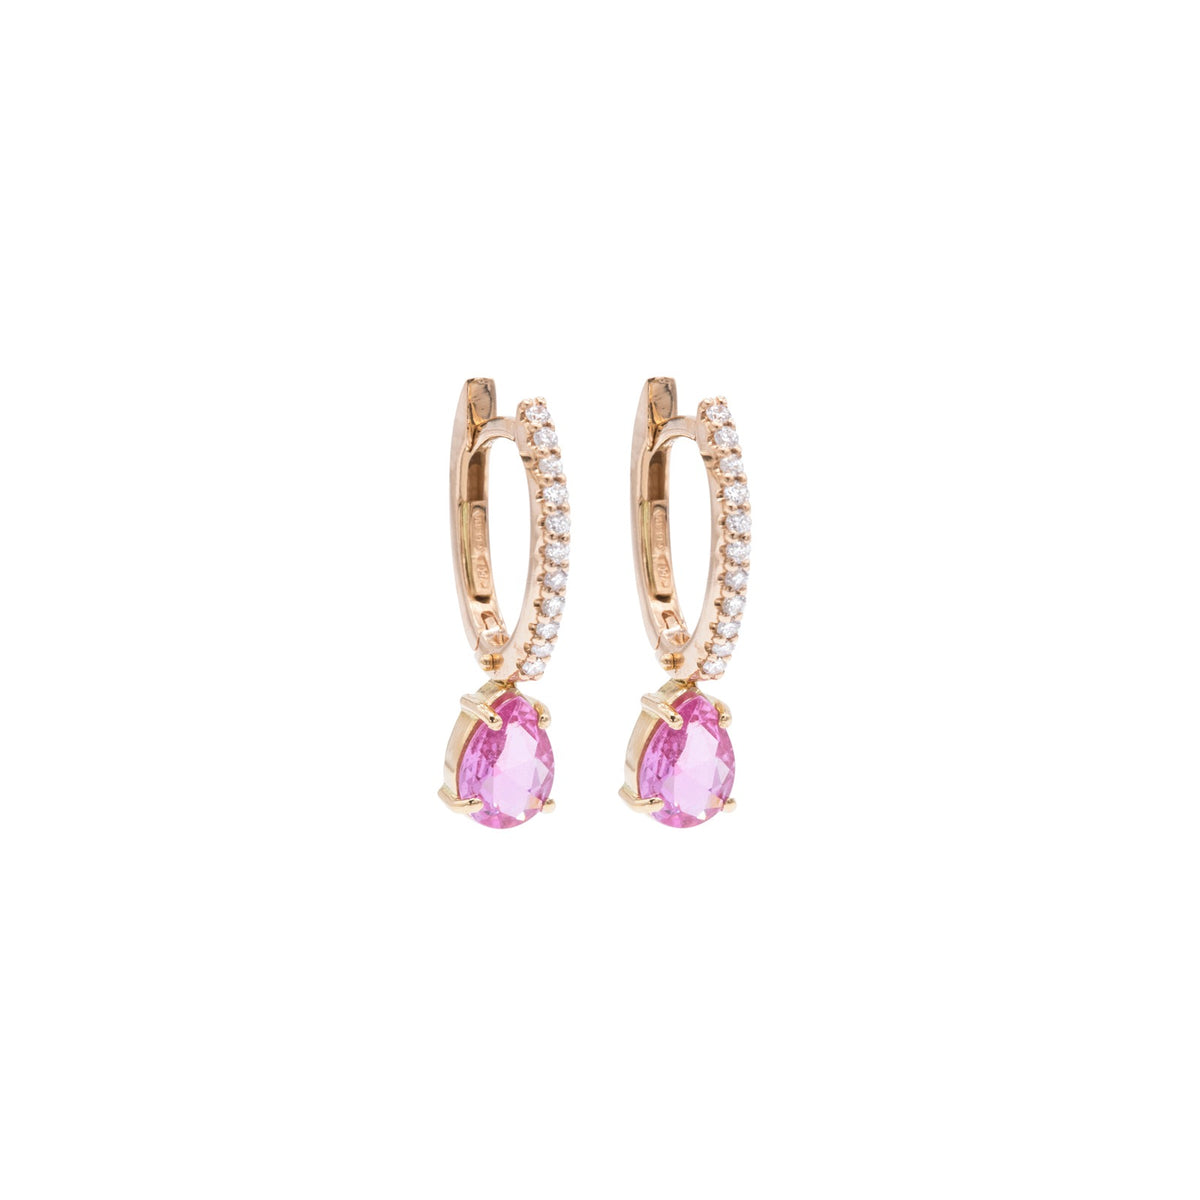 Diamond and pink sapphire hoop earrings